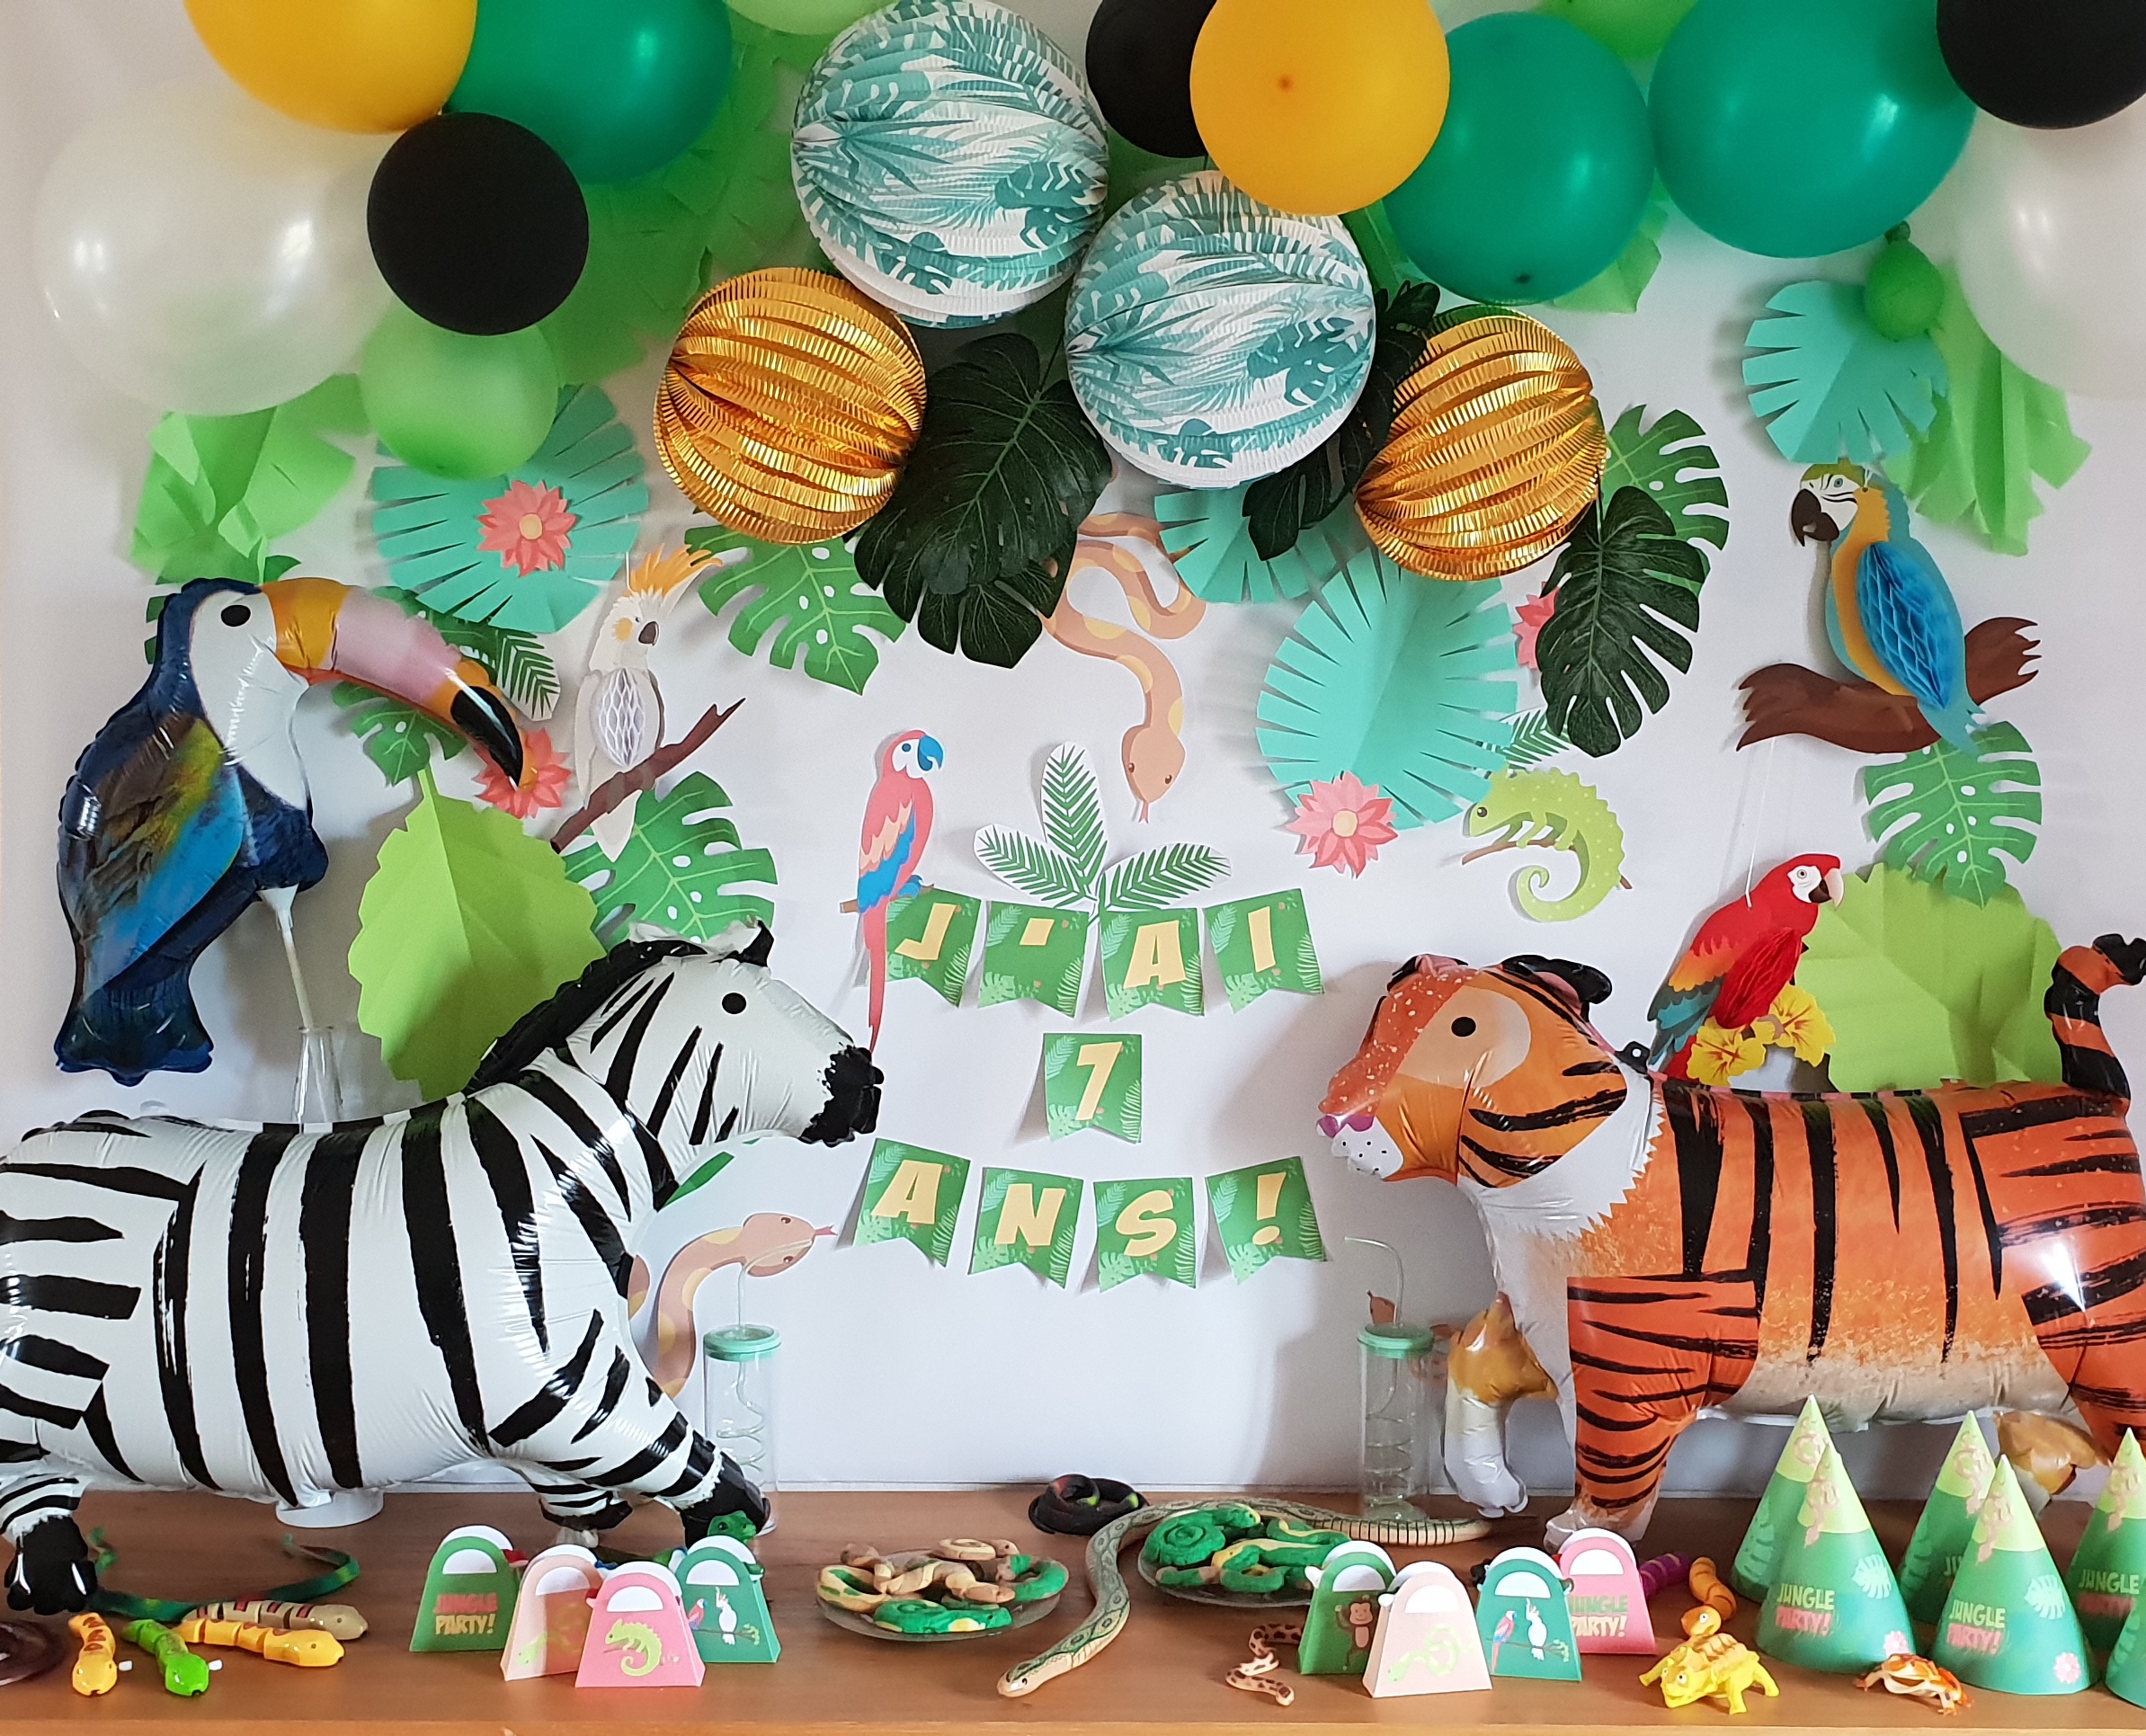 Enfants : un anniversaire sous les tropiques version jungle !